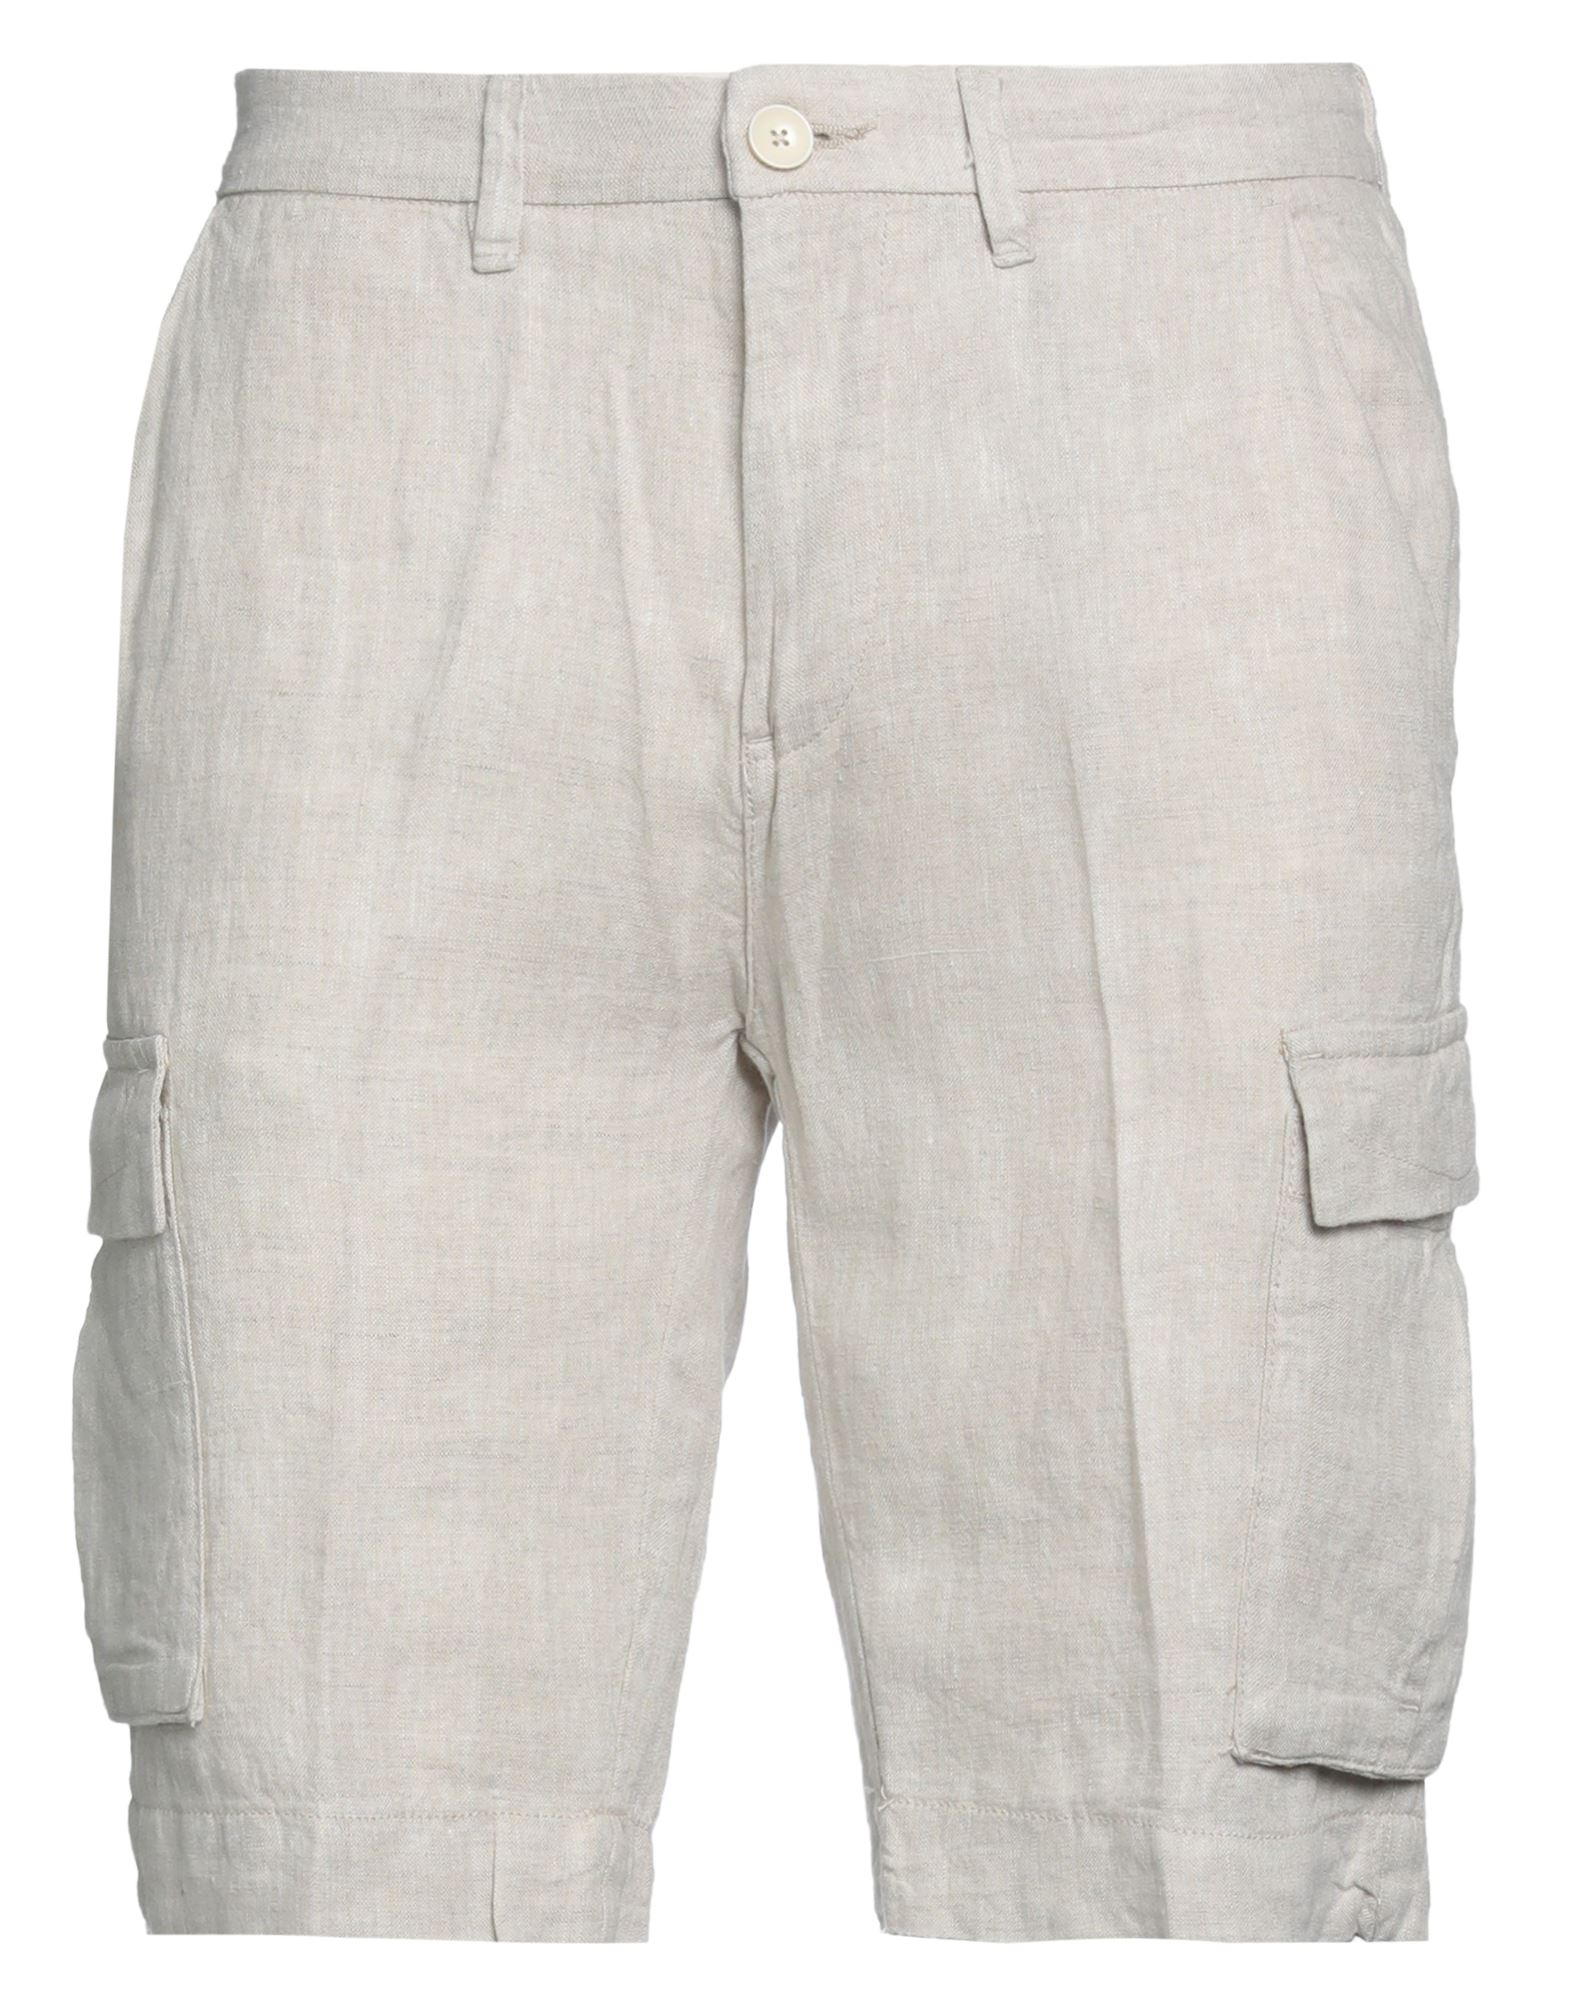 Gazzarrini Man Shorts & Bermuda Shorts Beige Size 40 Linen